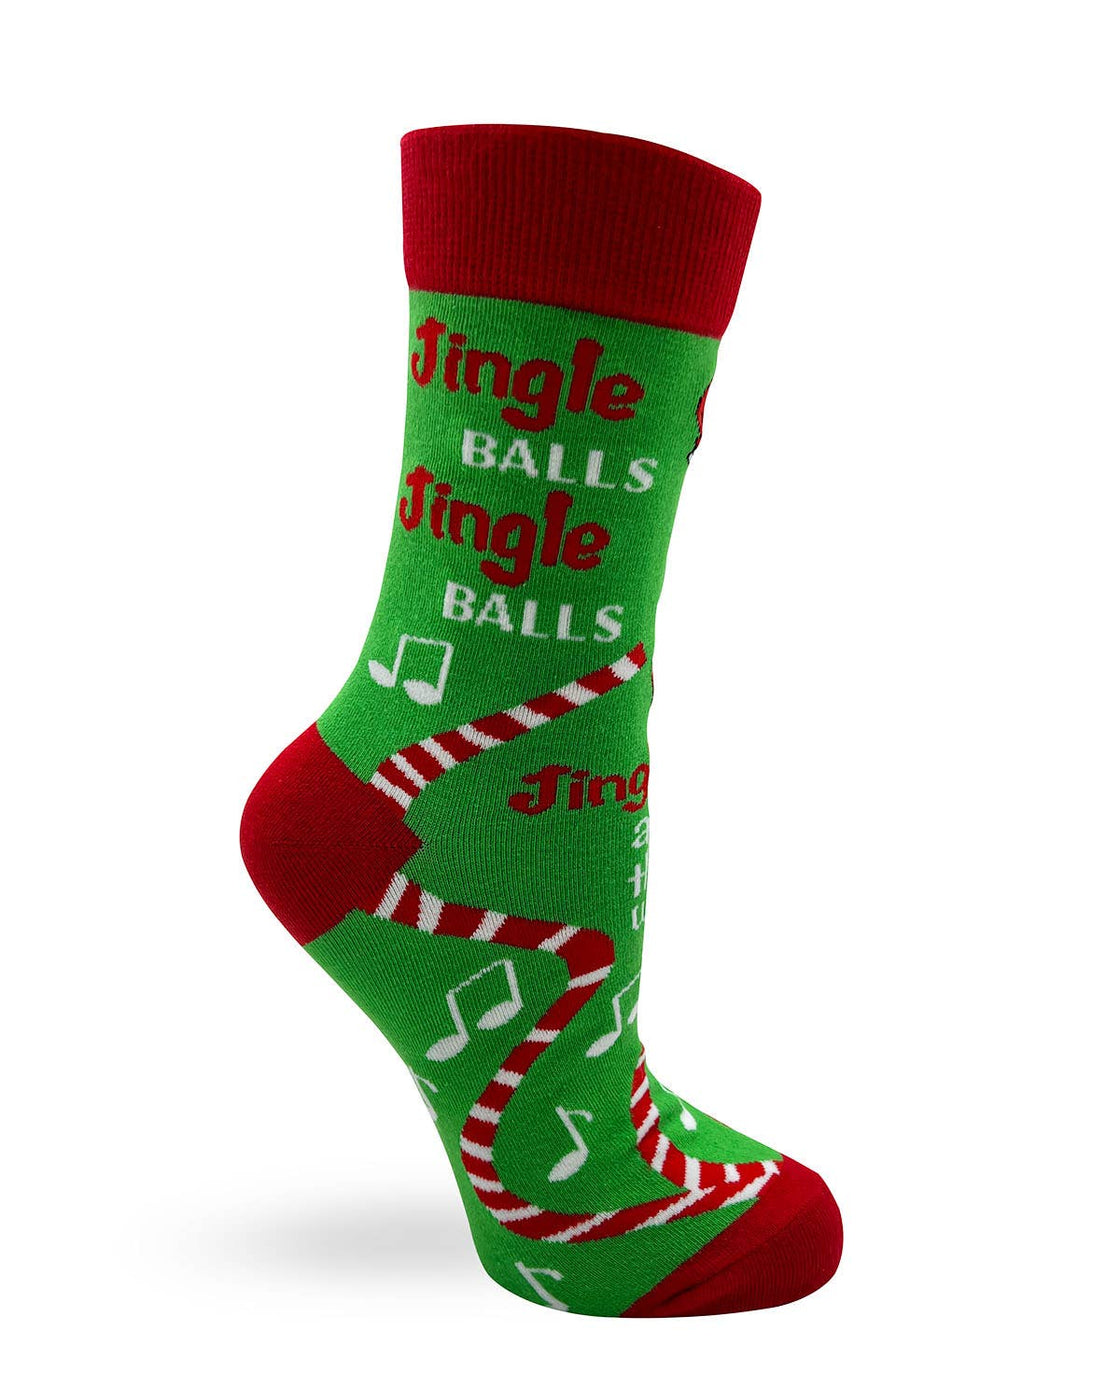 Jingle Balls and Festive Dicks Sassy Women's Novelty Socks